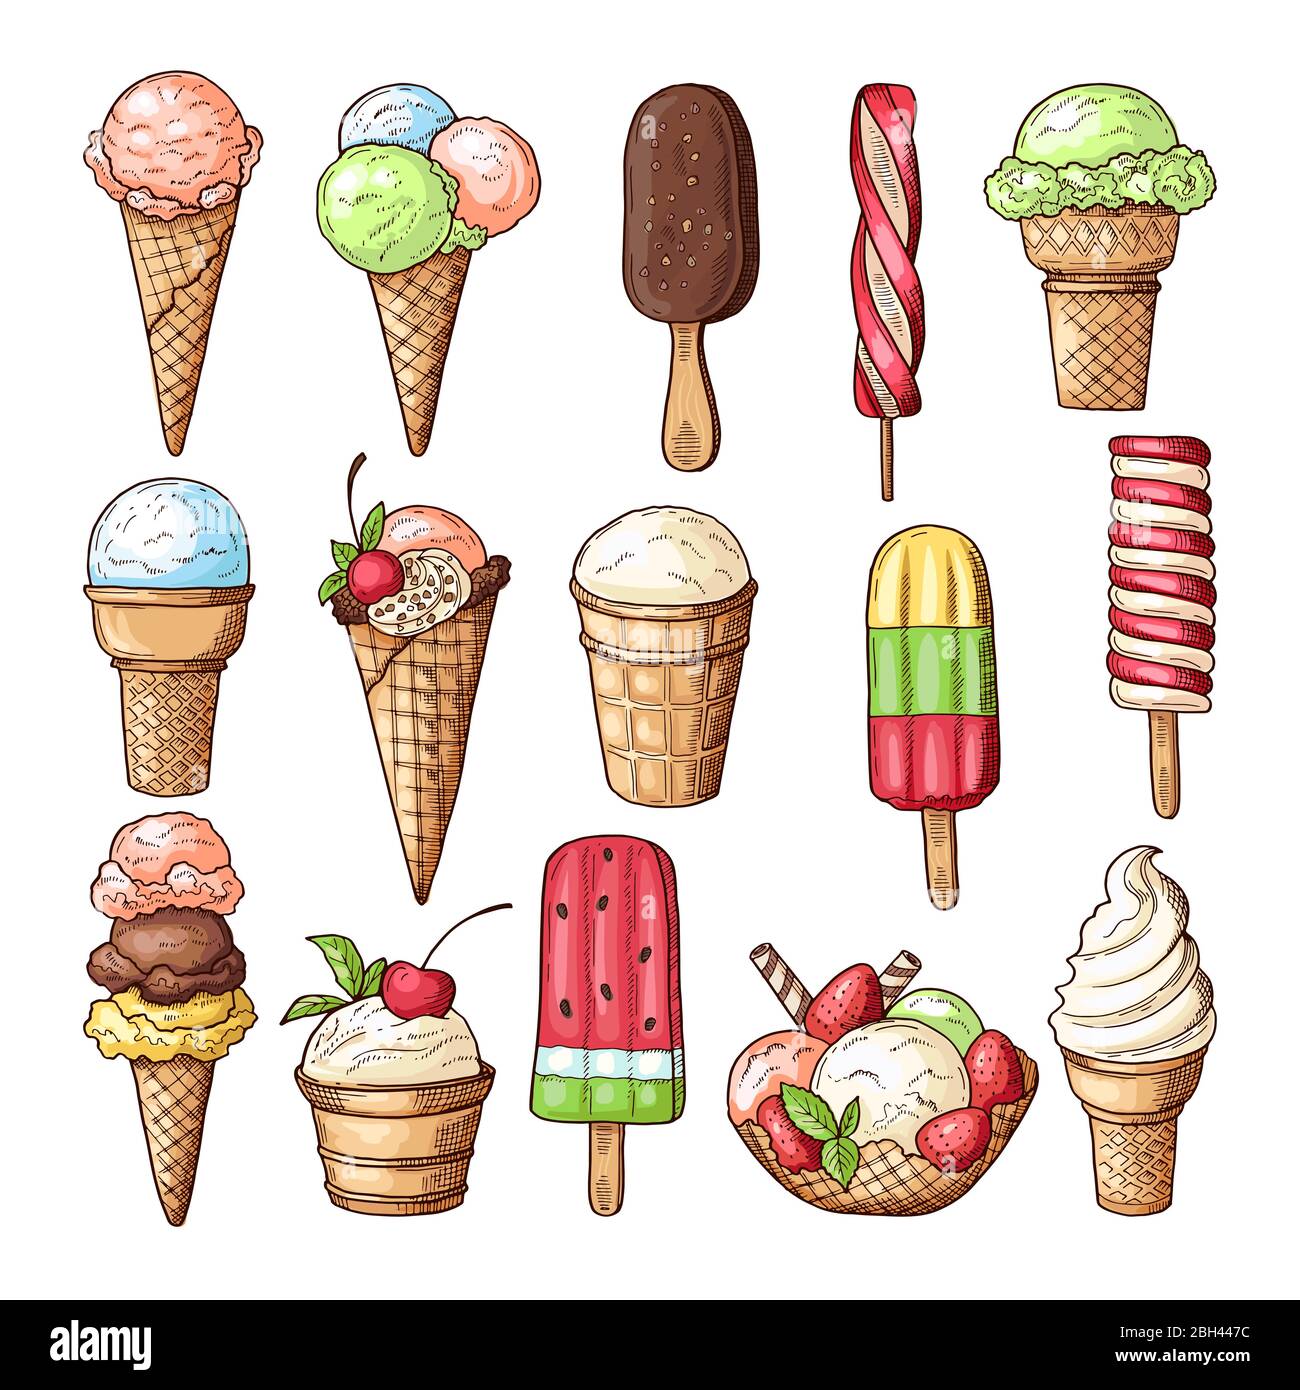 Farbige Illustrationen von Eis mit Schokolade, Lutscher und Erdbeere. Vektor Bilder Set von verschiedenen Desserts. Sammlung von Eis desse Stock Vektor